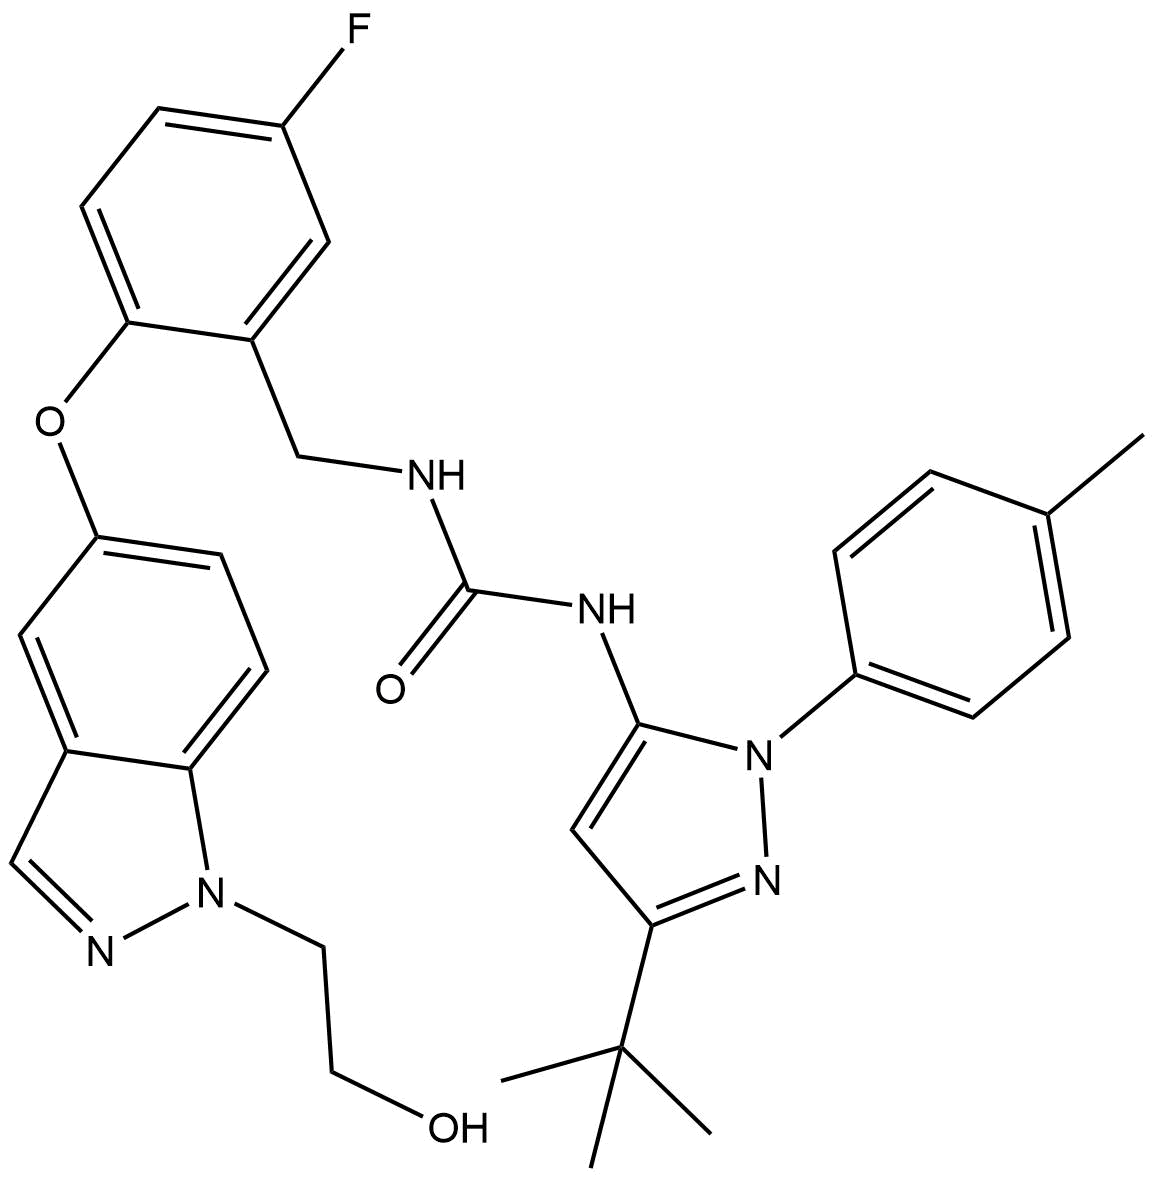 Pexmetinib (ARRY-614)